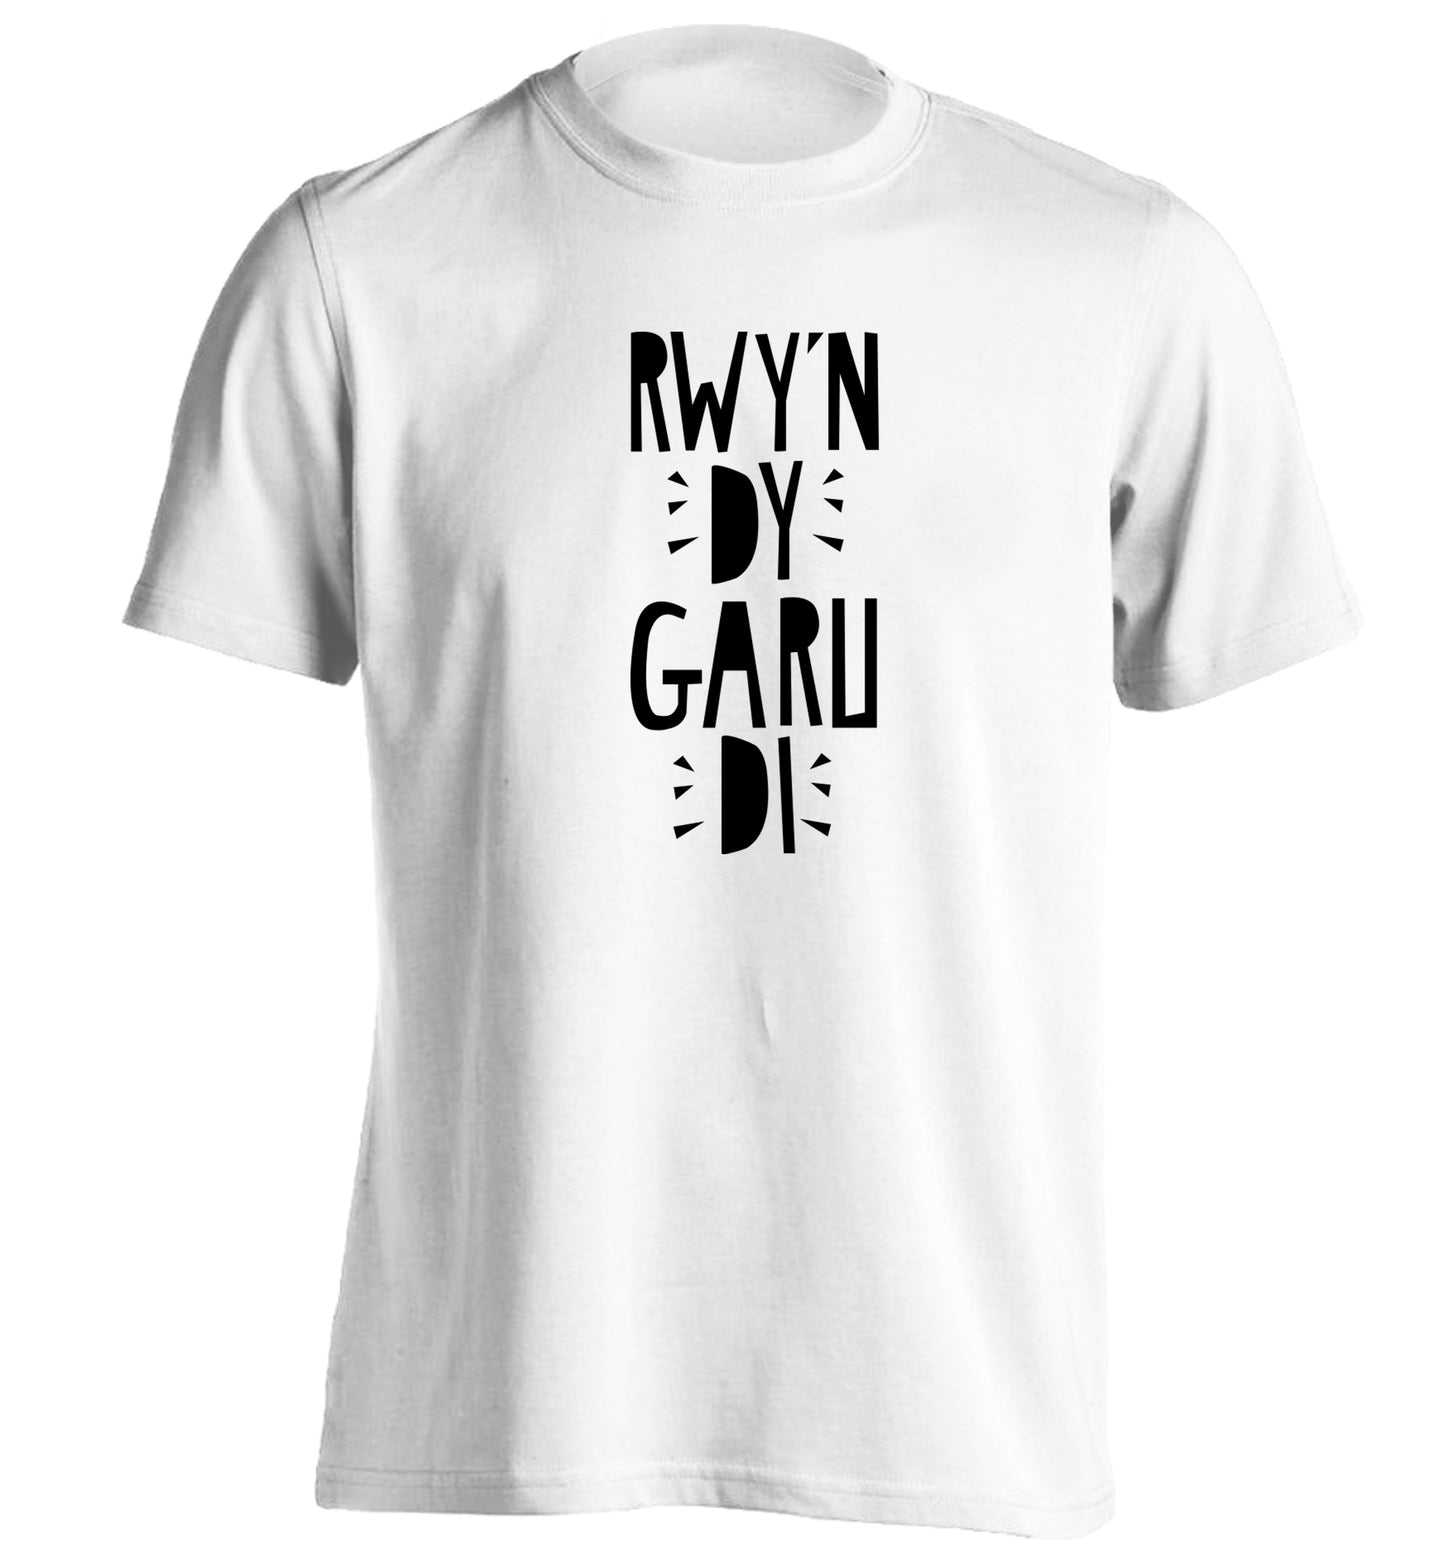 Rwy'n dy garu di - I love you adults unisex white Tshirt 2XL